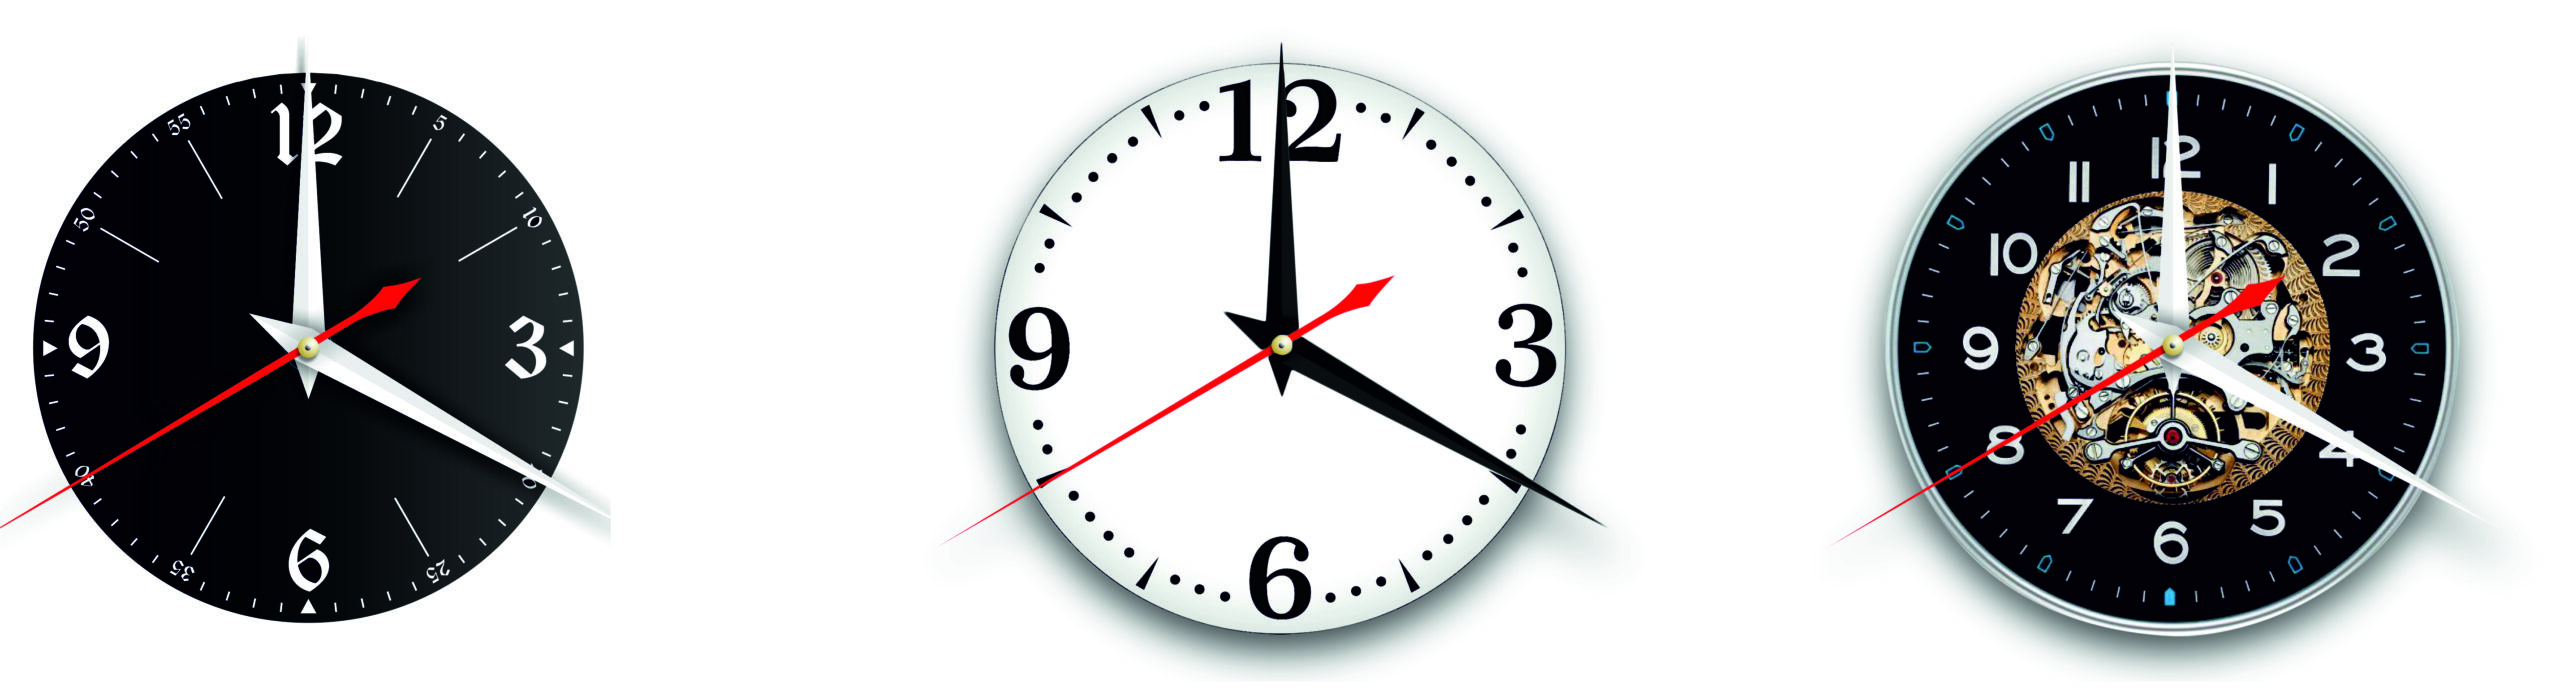 Кипелов - 2. Дизайнерские часы из настоящей виниловой пластинки